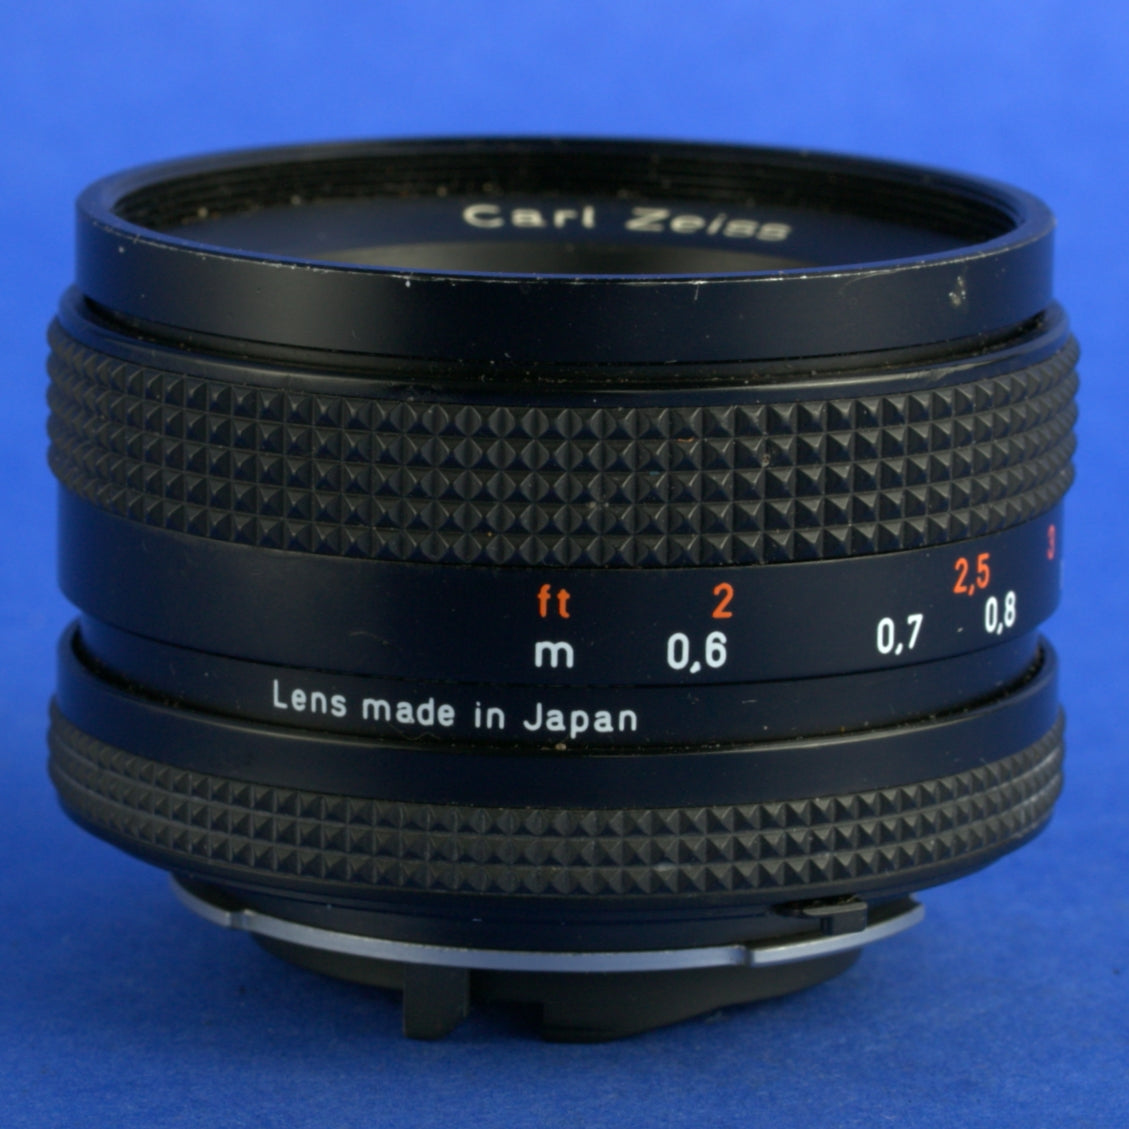 Contax Planar 50mm 1.7 MMJ C/Y Lens